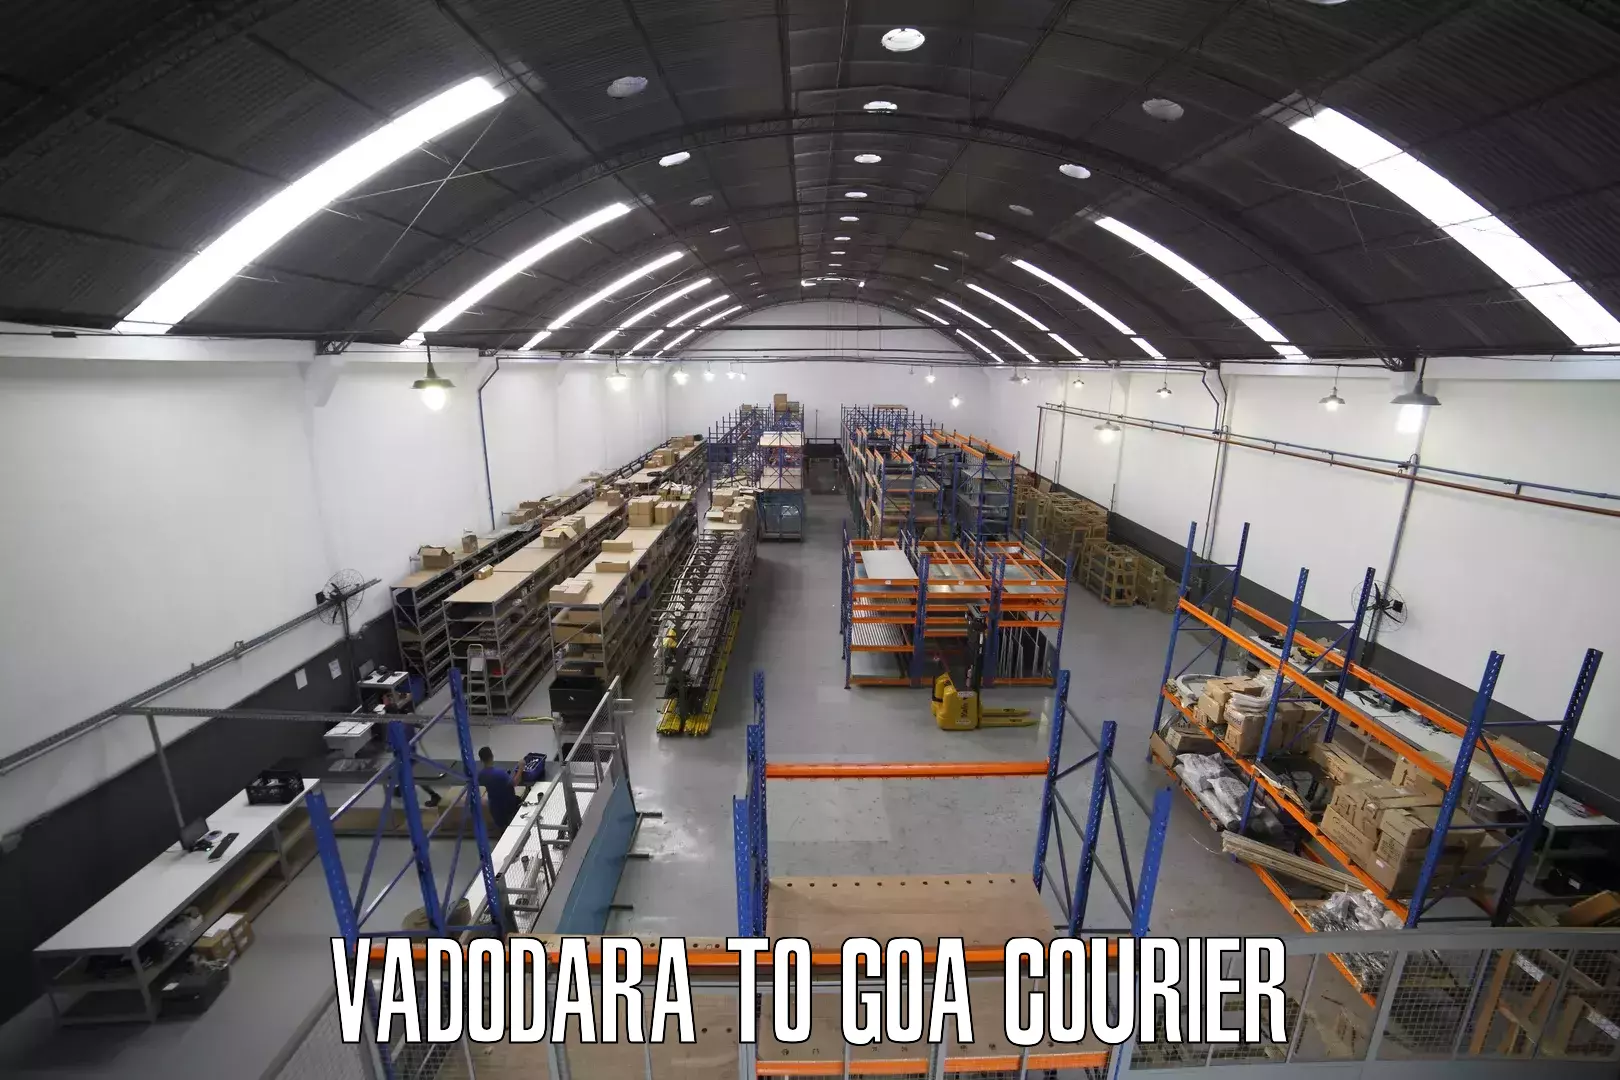 Customer-centric shipping Vadodara to IIT Goa